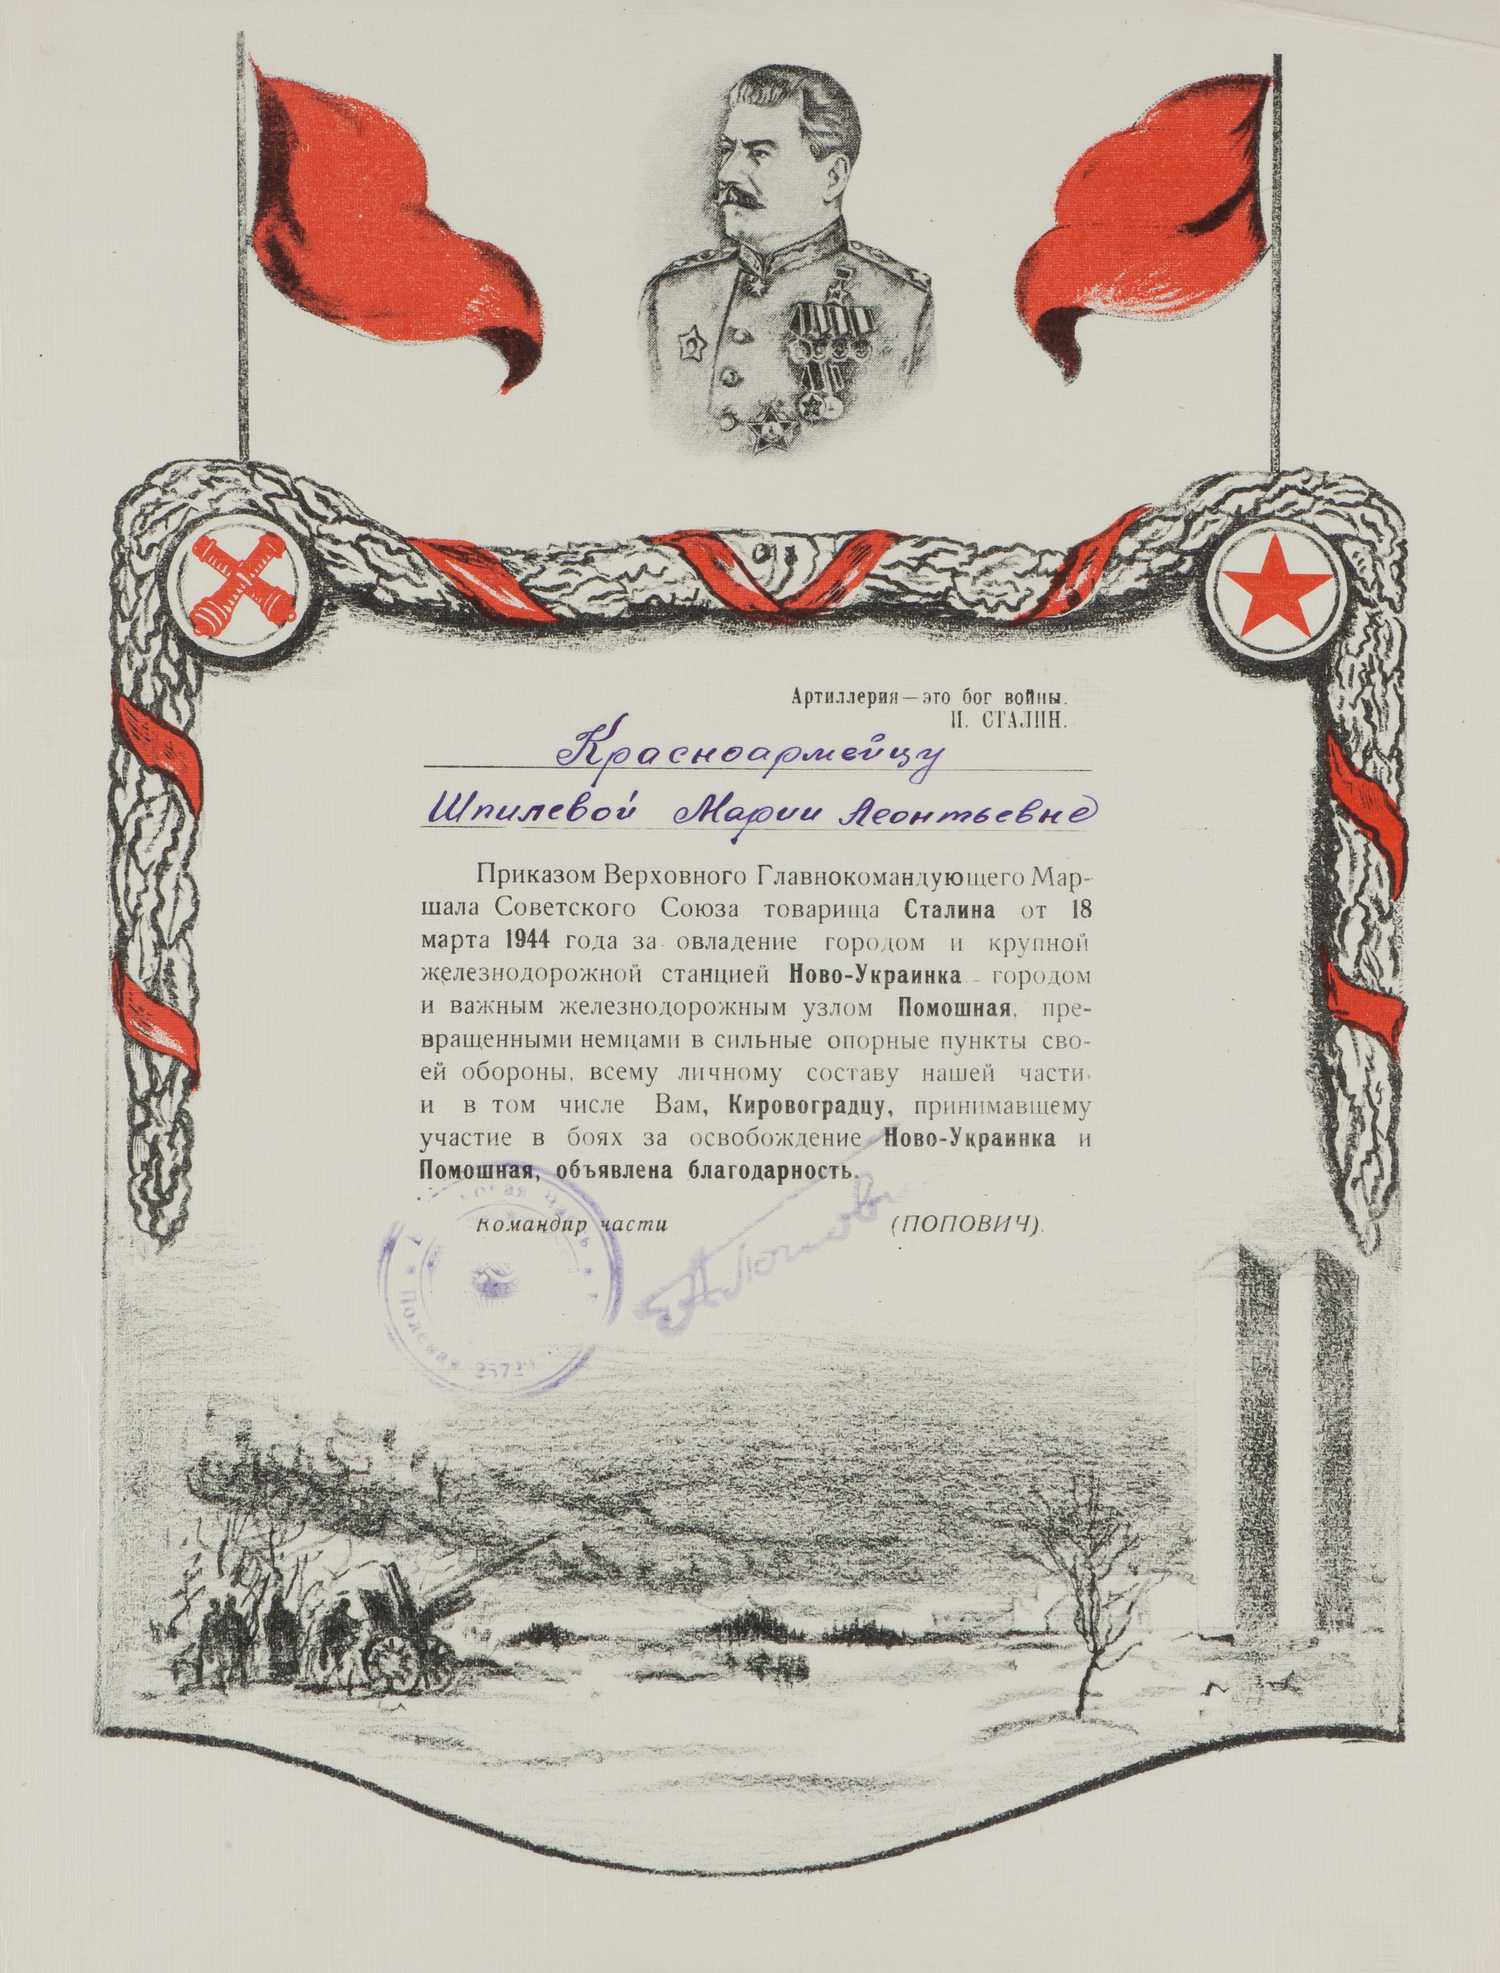 Иллюстрированный лист (благодарность) за овладение железнодорожной станцией Ново-Украинка и городом Помошная на имя красноармейца Марии Леонтьевны Шпилевой. 1944.